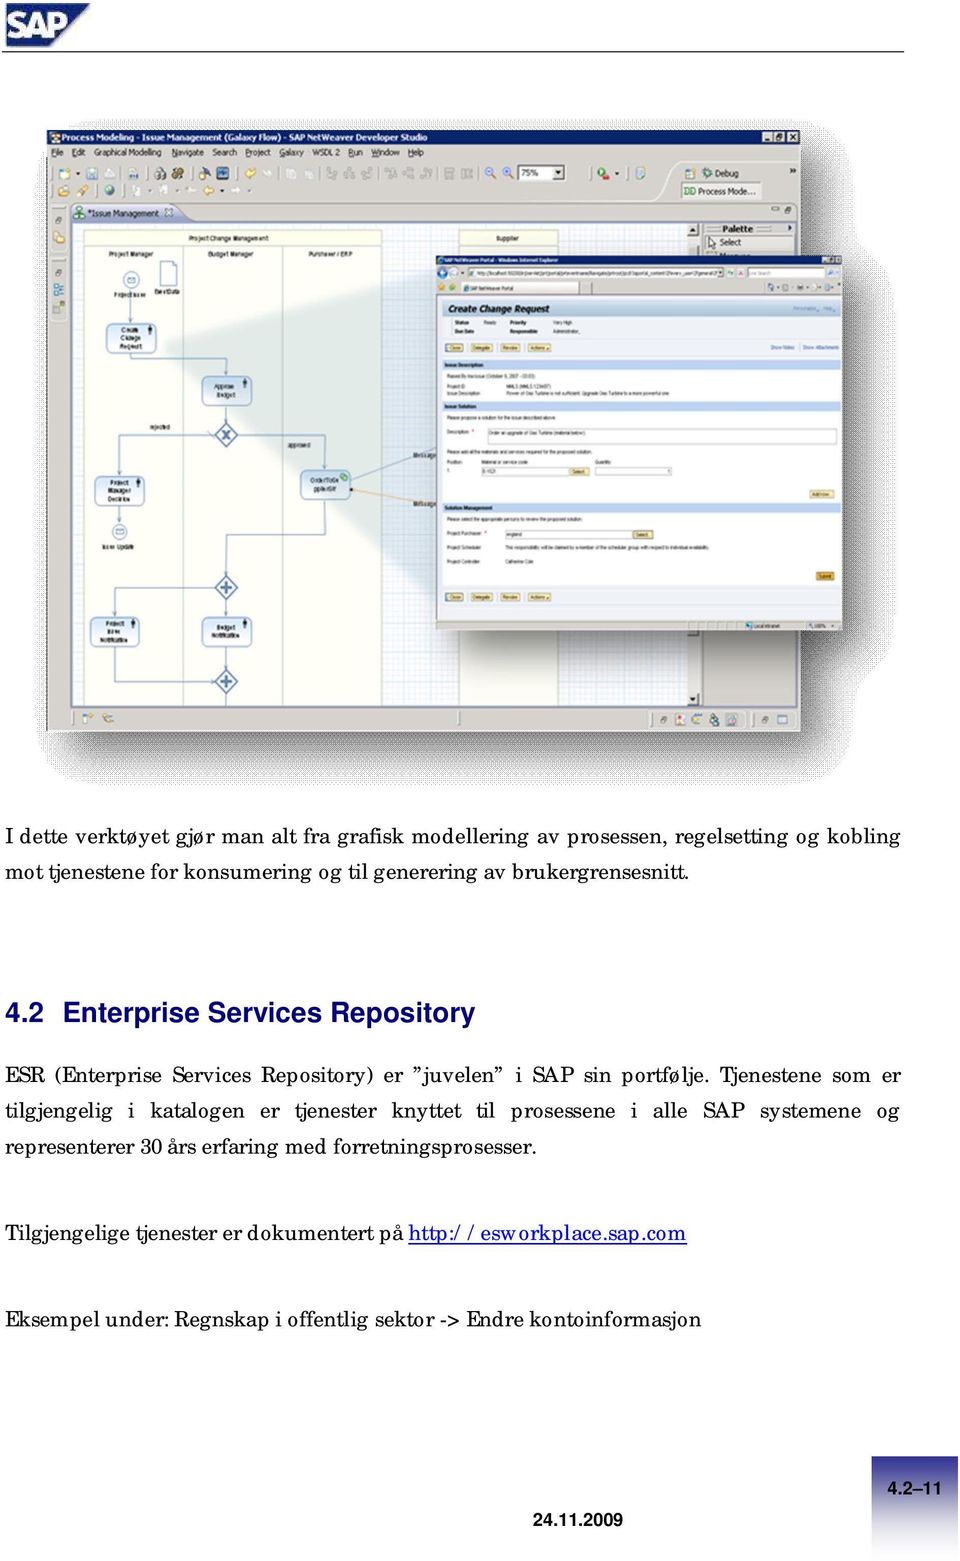 Tjenestene som er tilgjengelig i katalogen er tjenester knyttet til prosessene i alle SAP systemene og representerer 30 års erfaring med